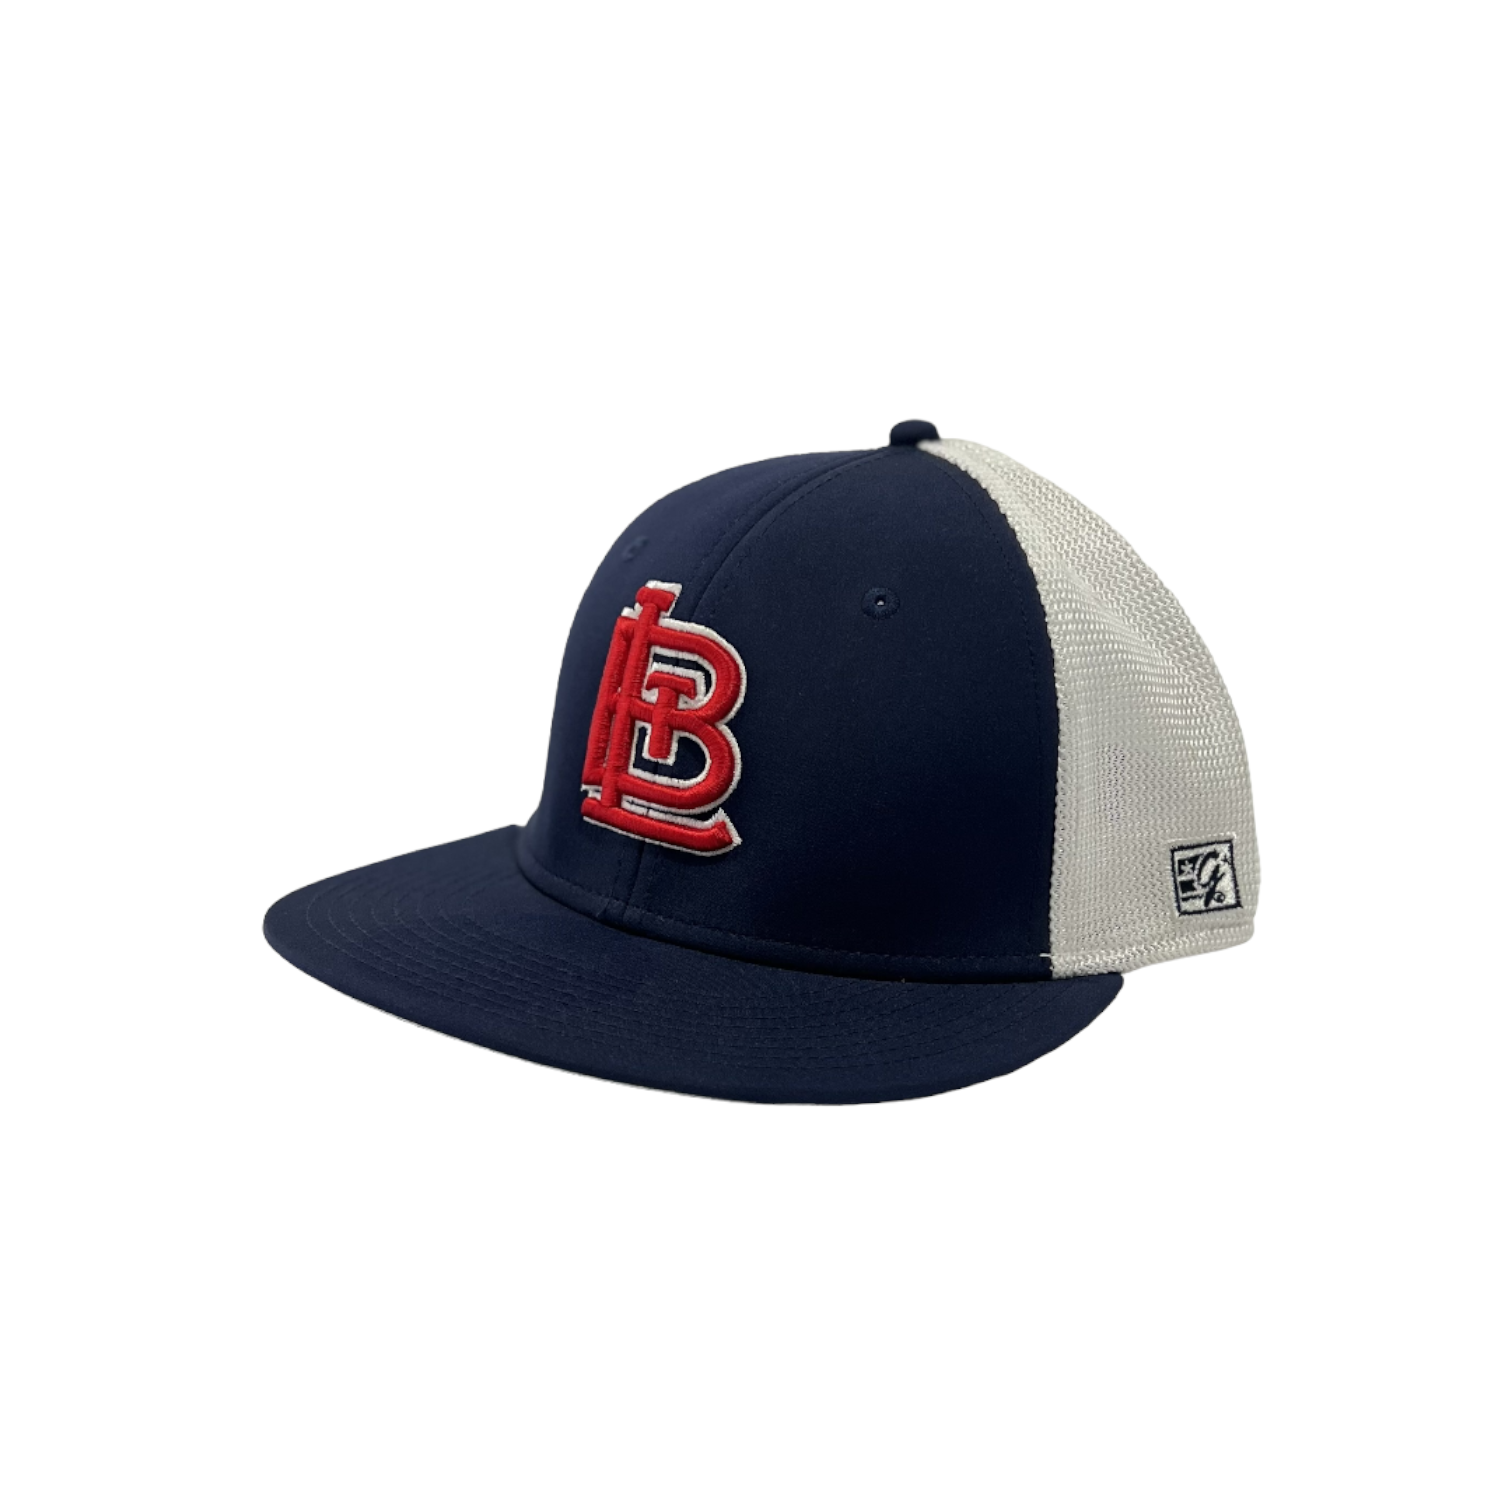 BTL Game Fitted Hat